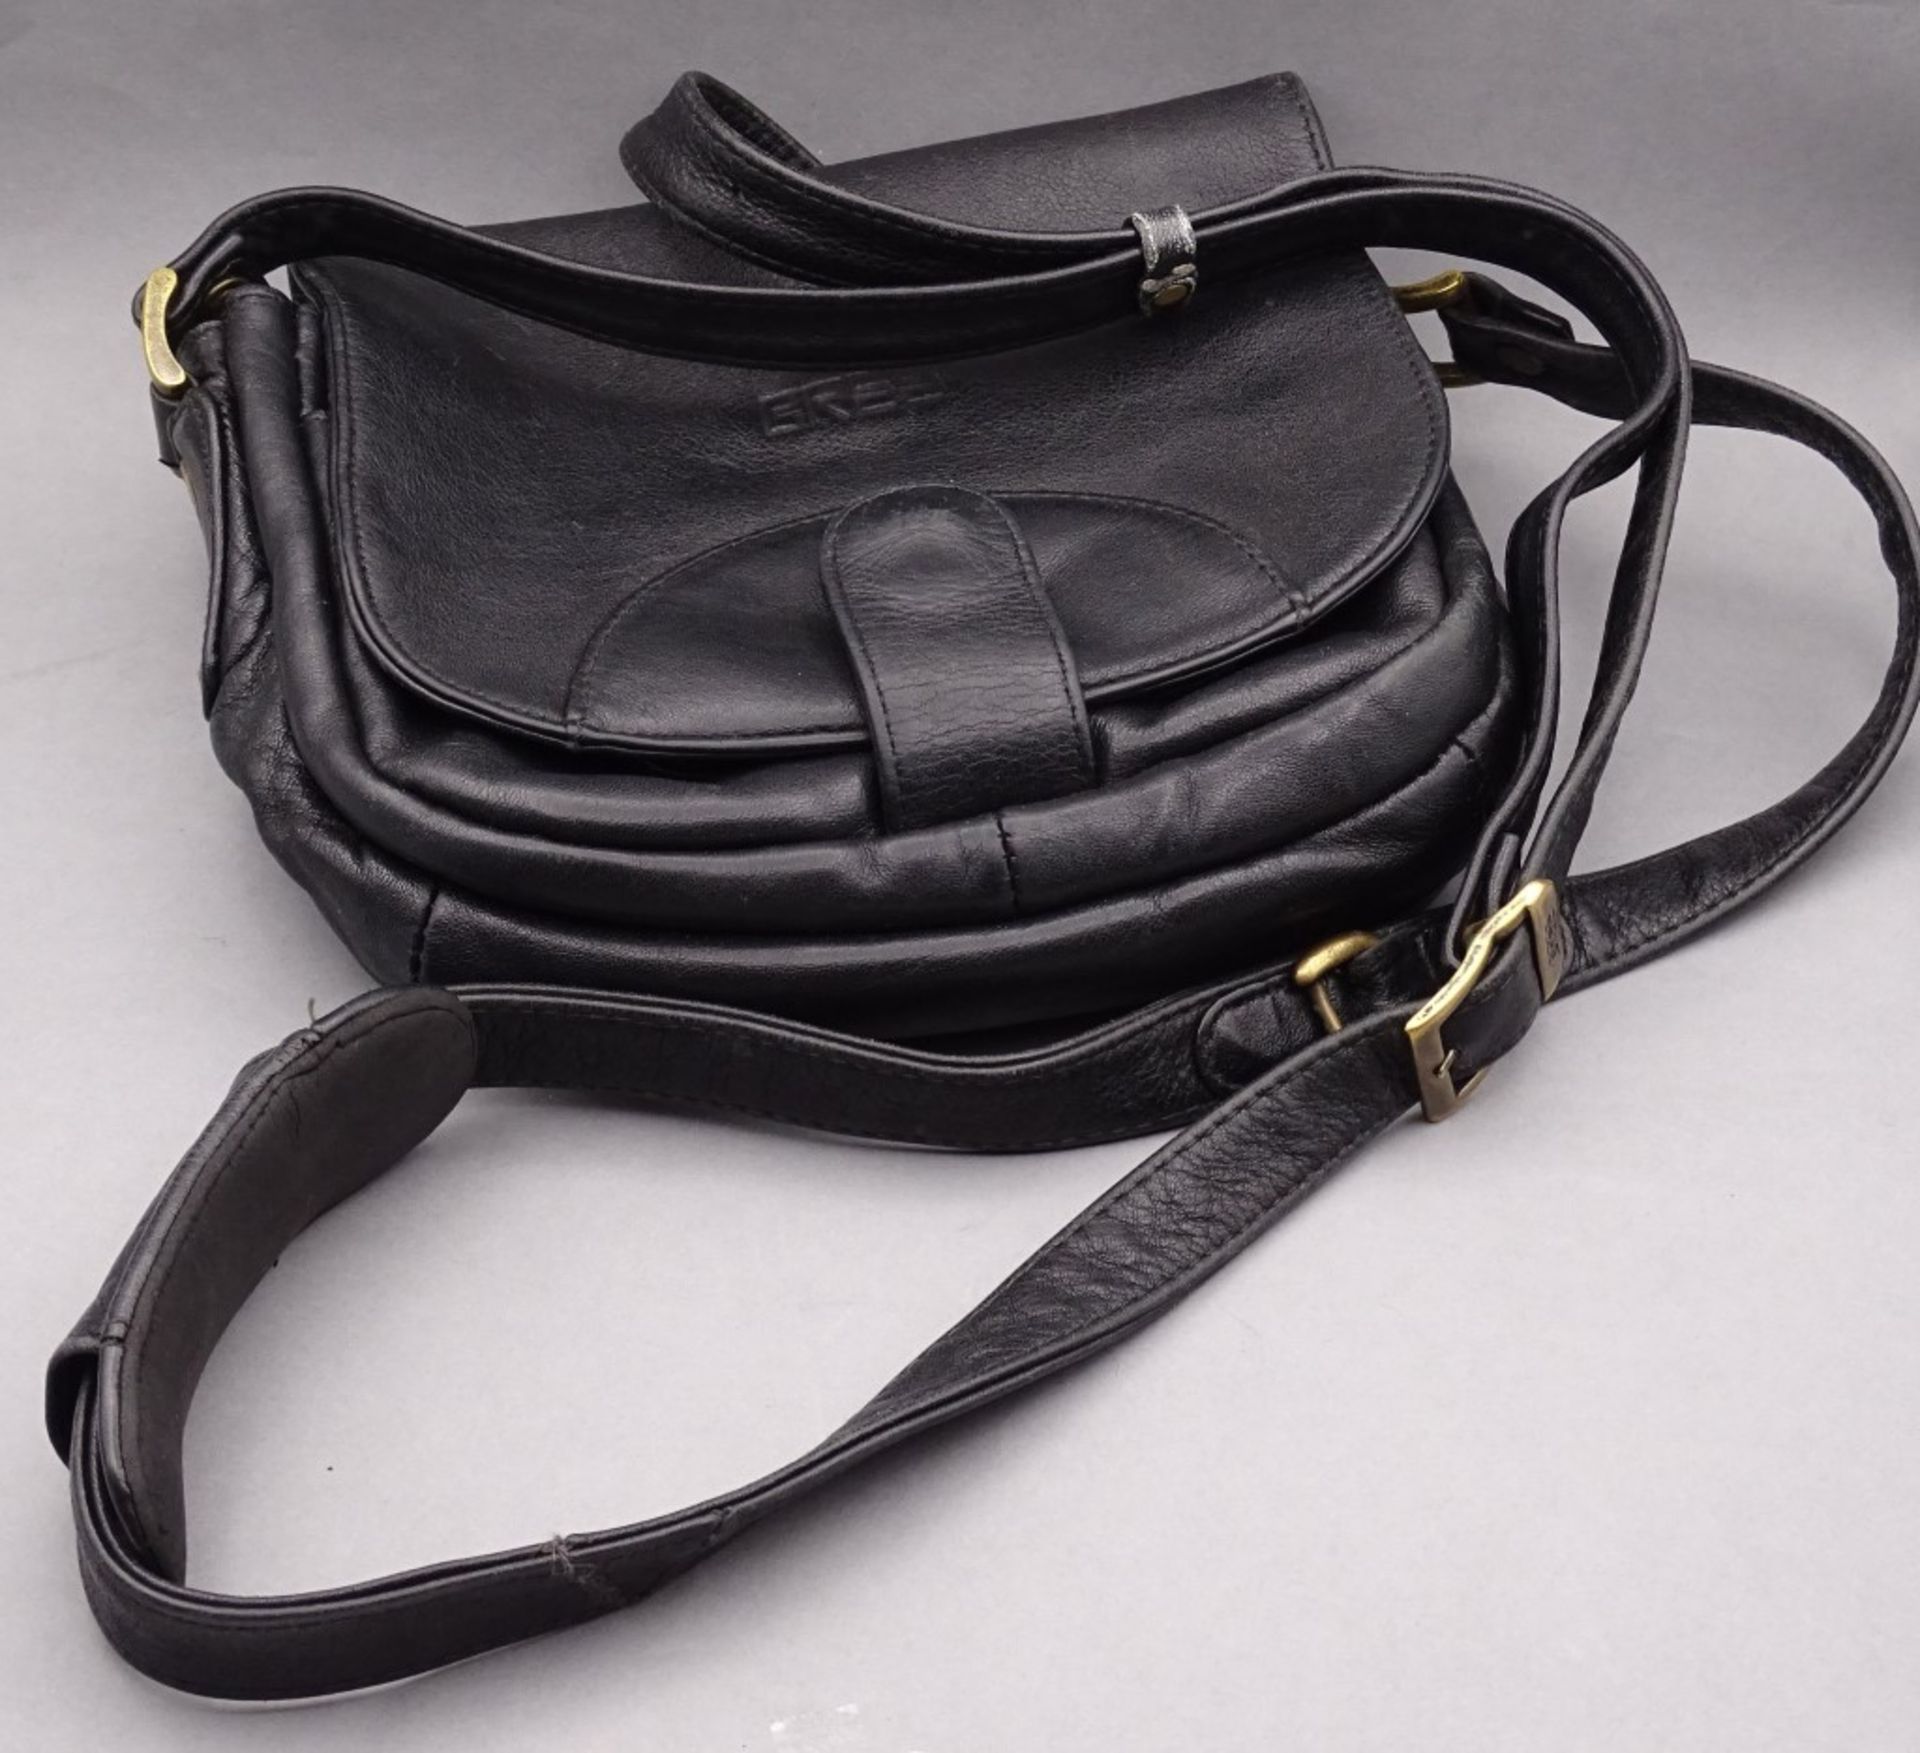 Damen Handtasche "Bree",schwarz,Alters-u. Gebrauchsspuren